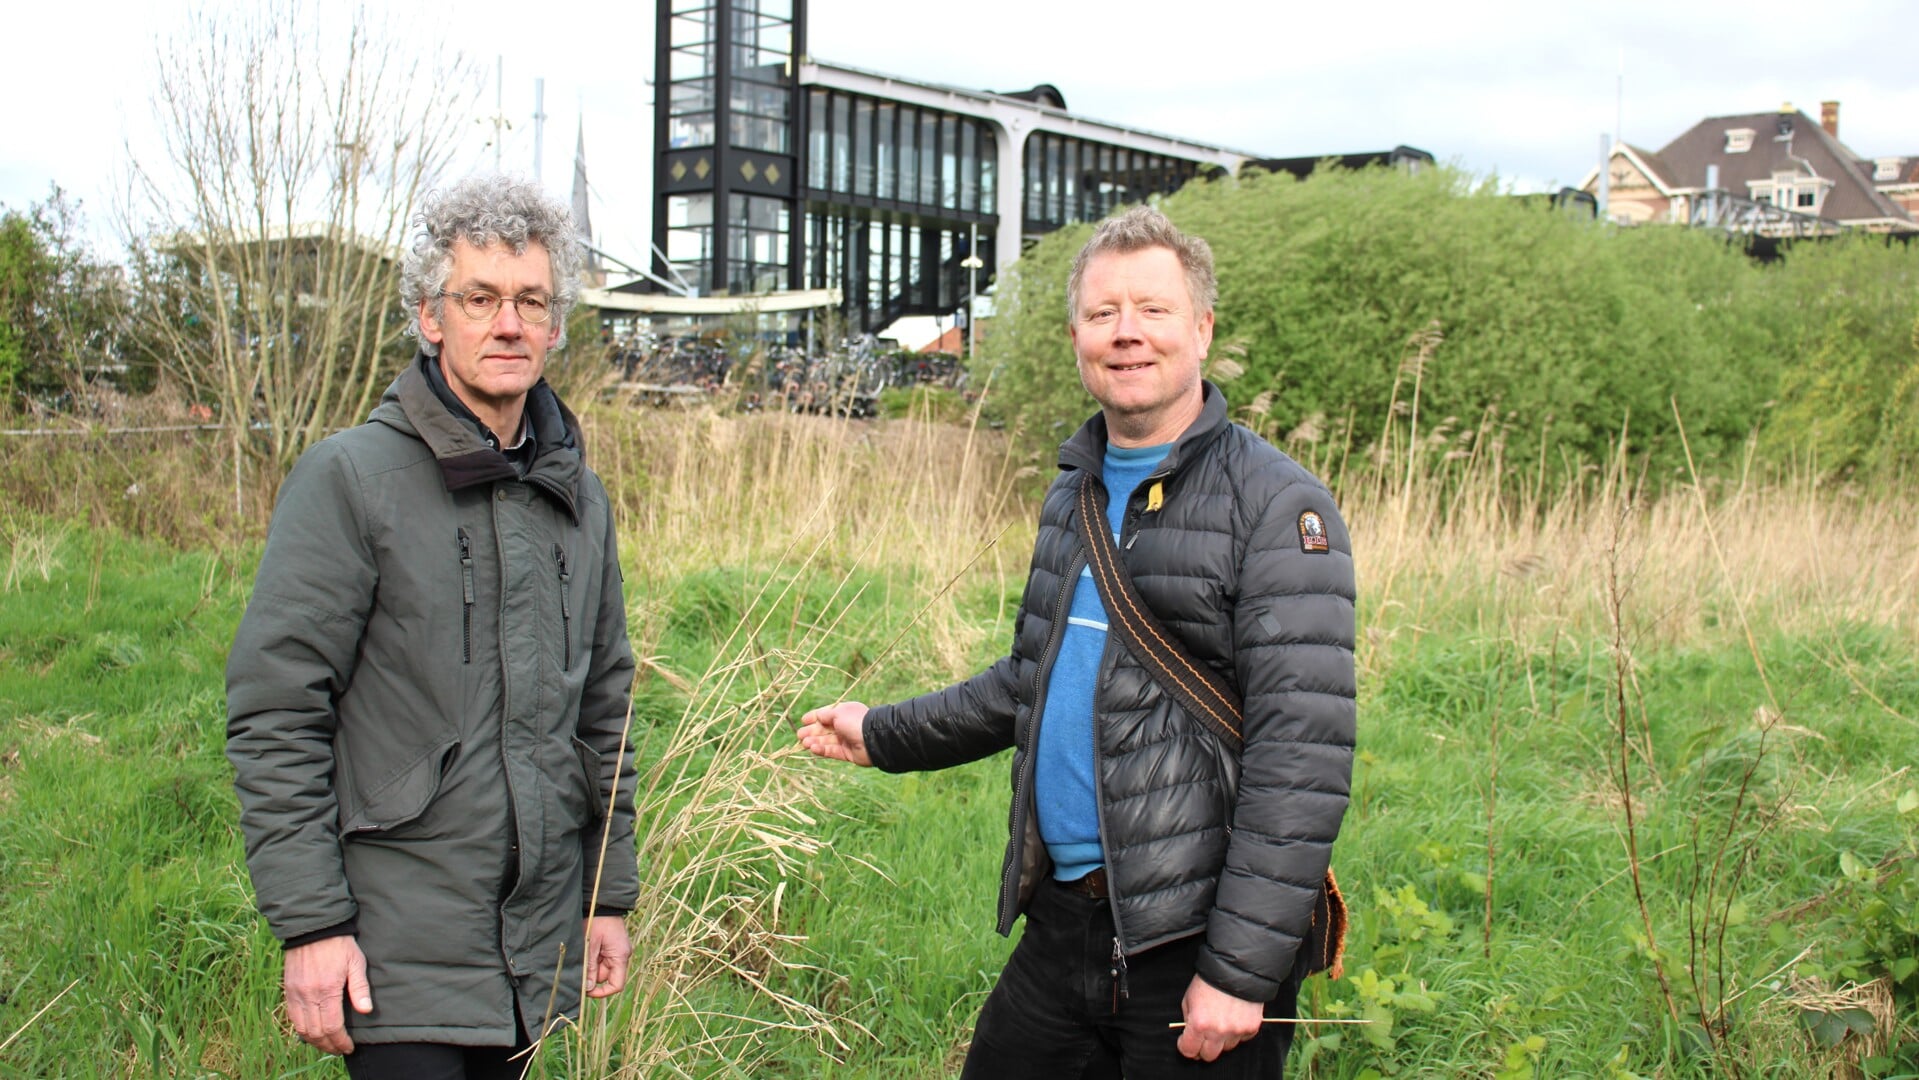 • Tom Rullman en Maurice Jurg voor het stukje wilde natuur nabij het treinstation van Woerden.